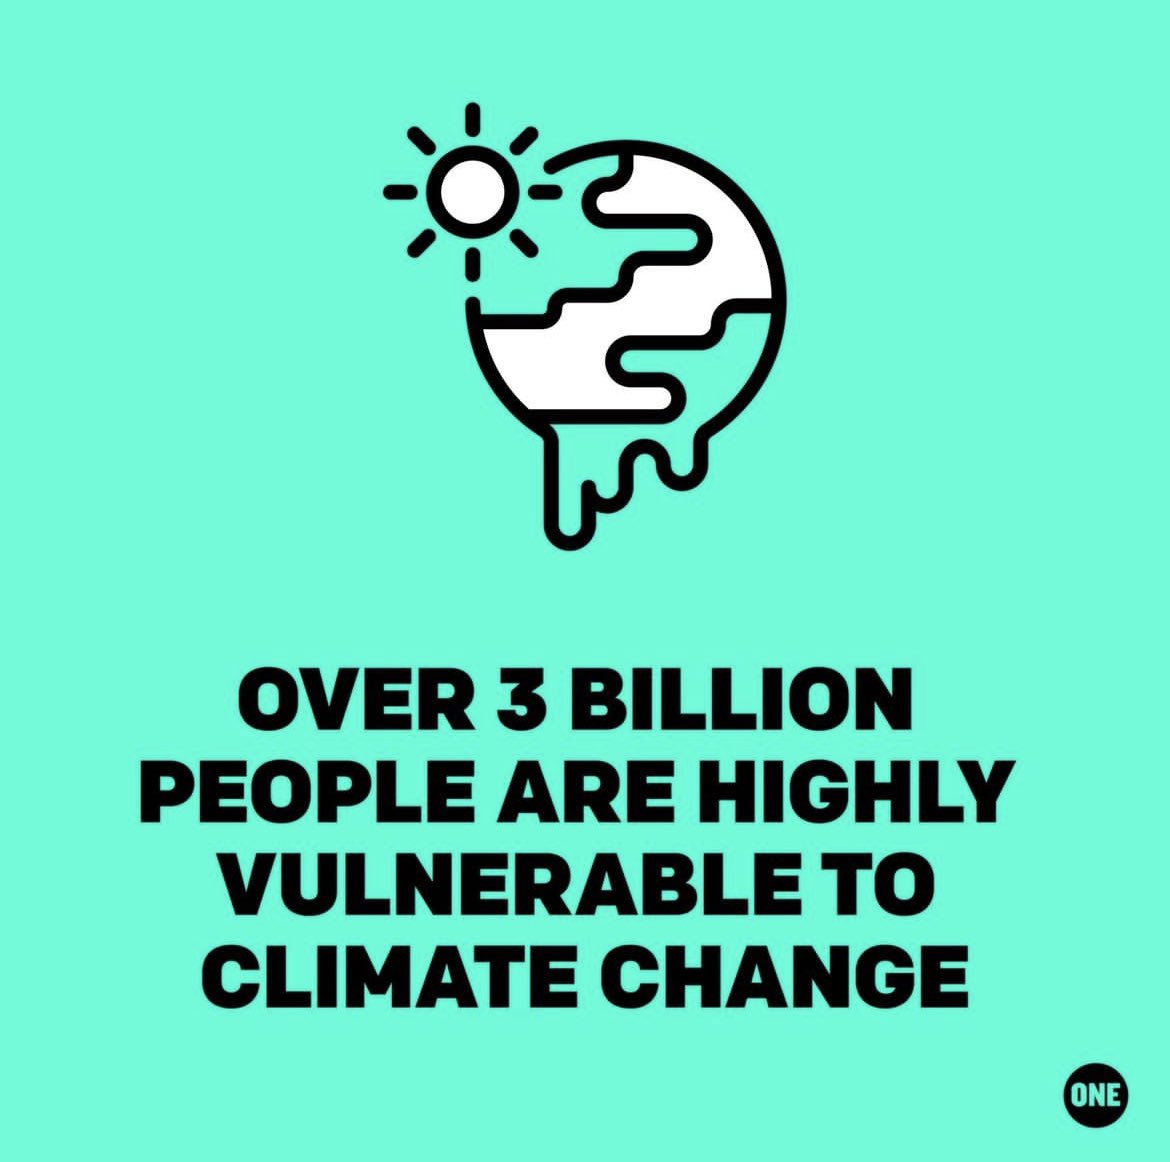 Non bruciate il nostro futuro!
Come #ONEActivists, chiediamo ai leader 🌍 di agire ORA, contrastare la crisi climatica e preservare il nostro ecosistema
#BonnClimateConference #SB58